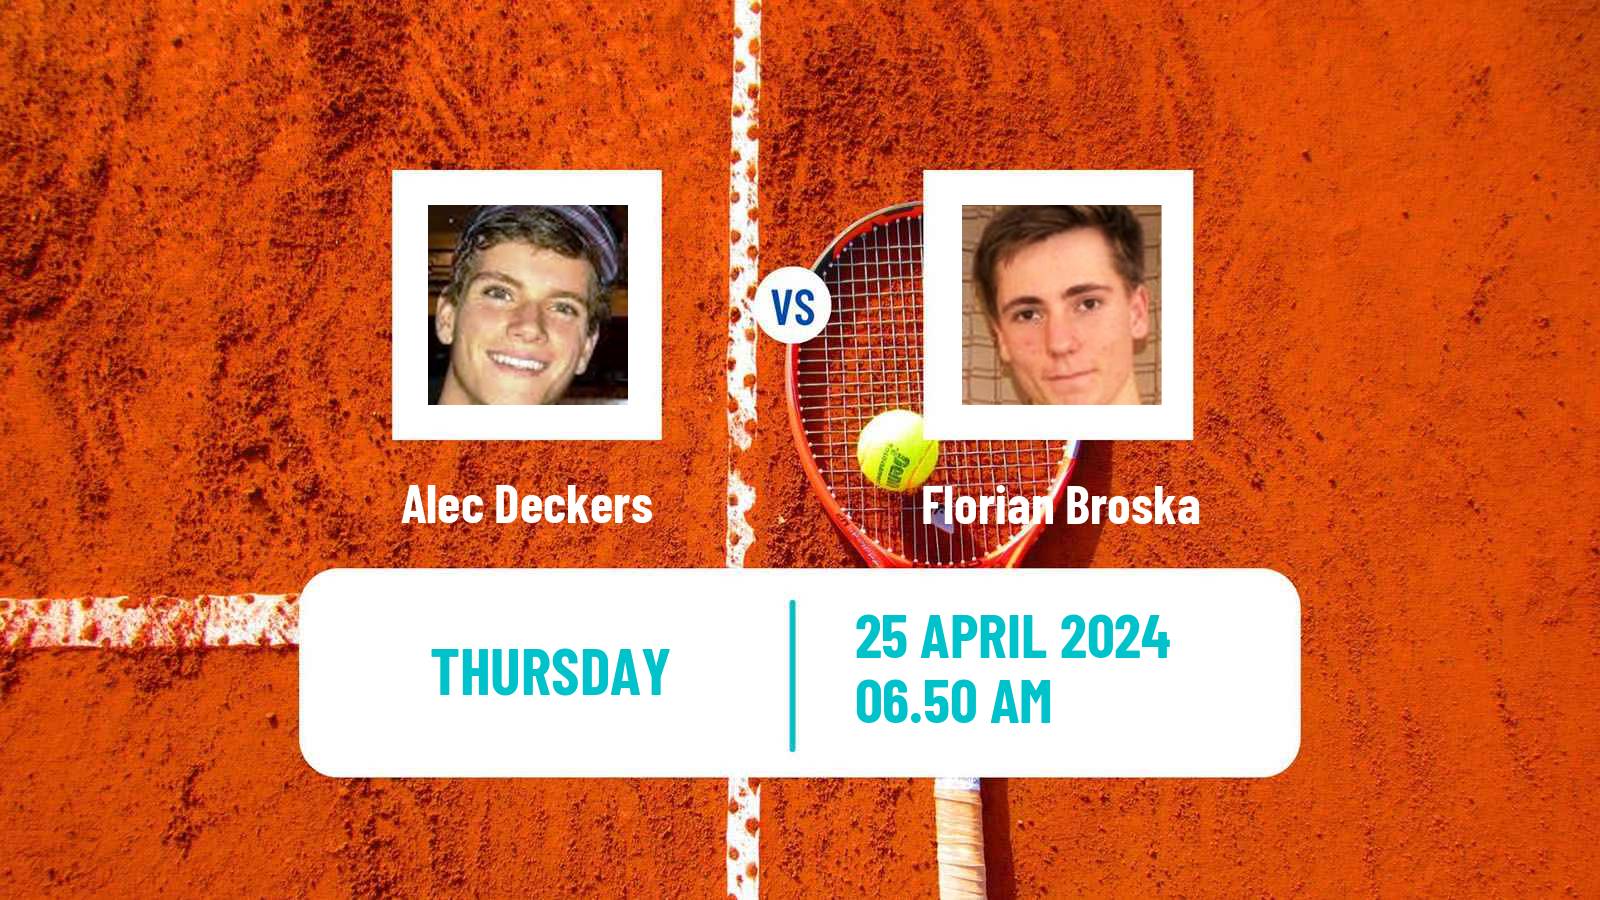 Tennis ITF M15 Meerbusch Men Alec Deckers - Florian Broska